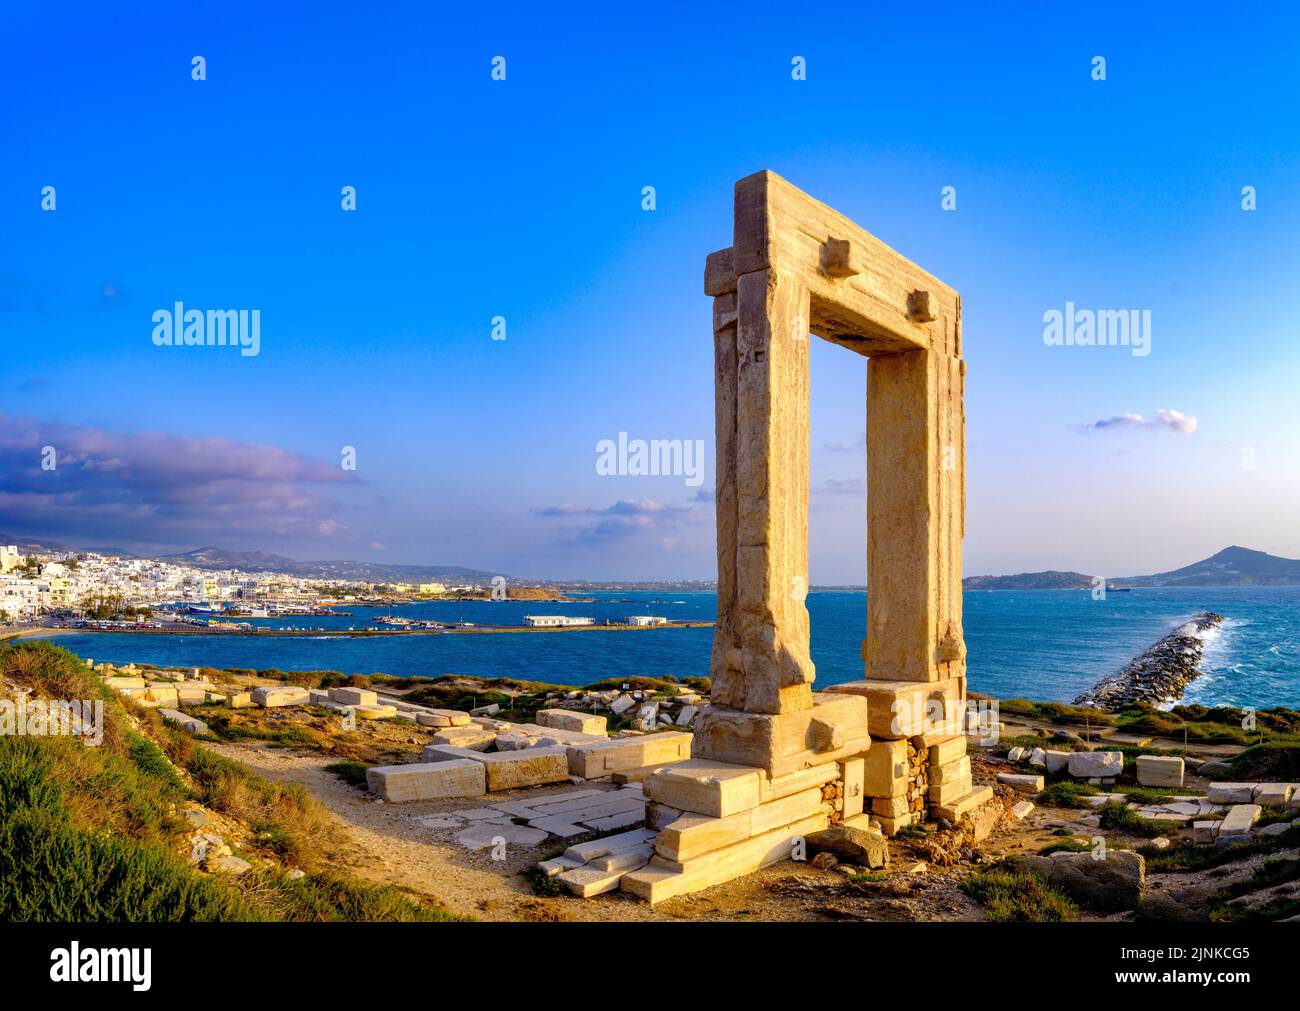 Porte au Temple d'Apollon, Portara antique, île de Naxos la Chora, la vieille ville de Naxos, l'île des Cyclades de la capitale, la Grèce, l'Europe Mer Egéé, Méditerranée Banque D'Images